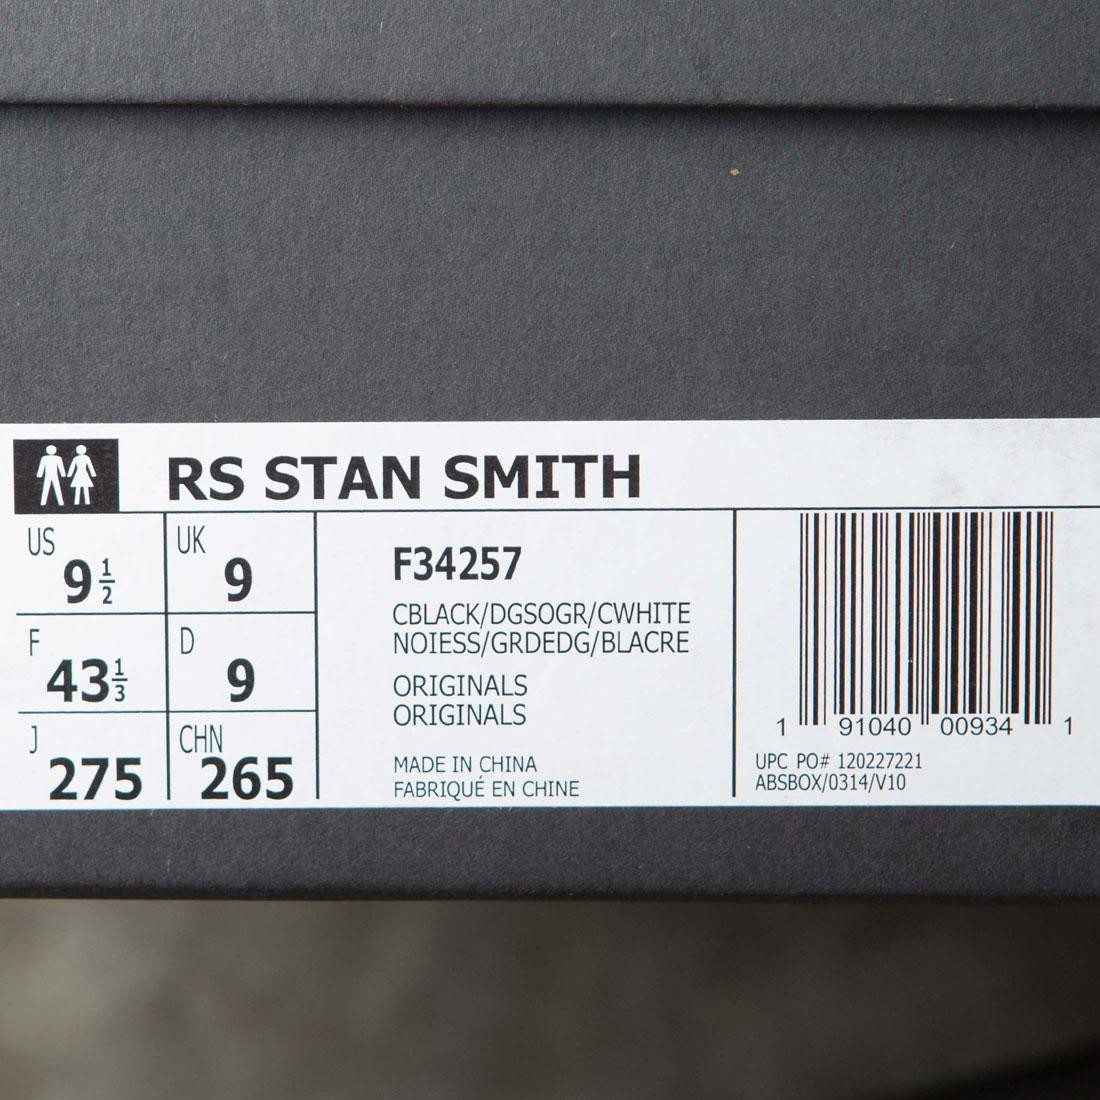 adidas Stan Smith Raf Simons Black Orange Men's - BB2647 - US